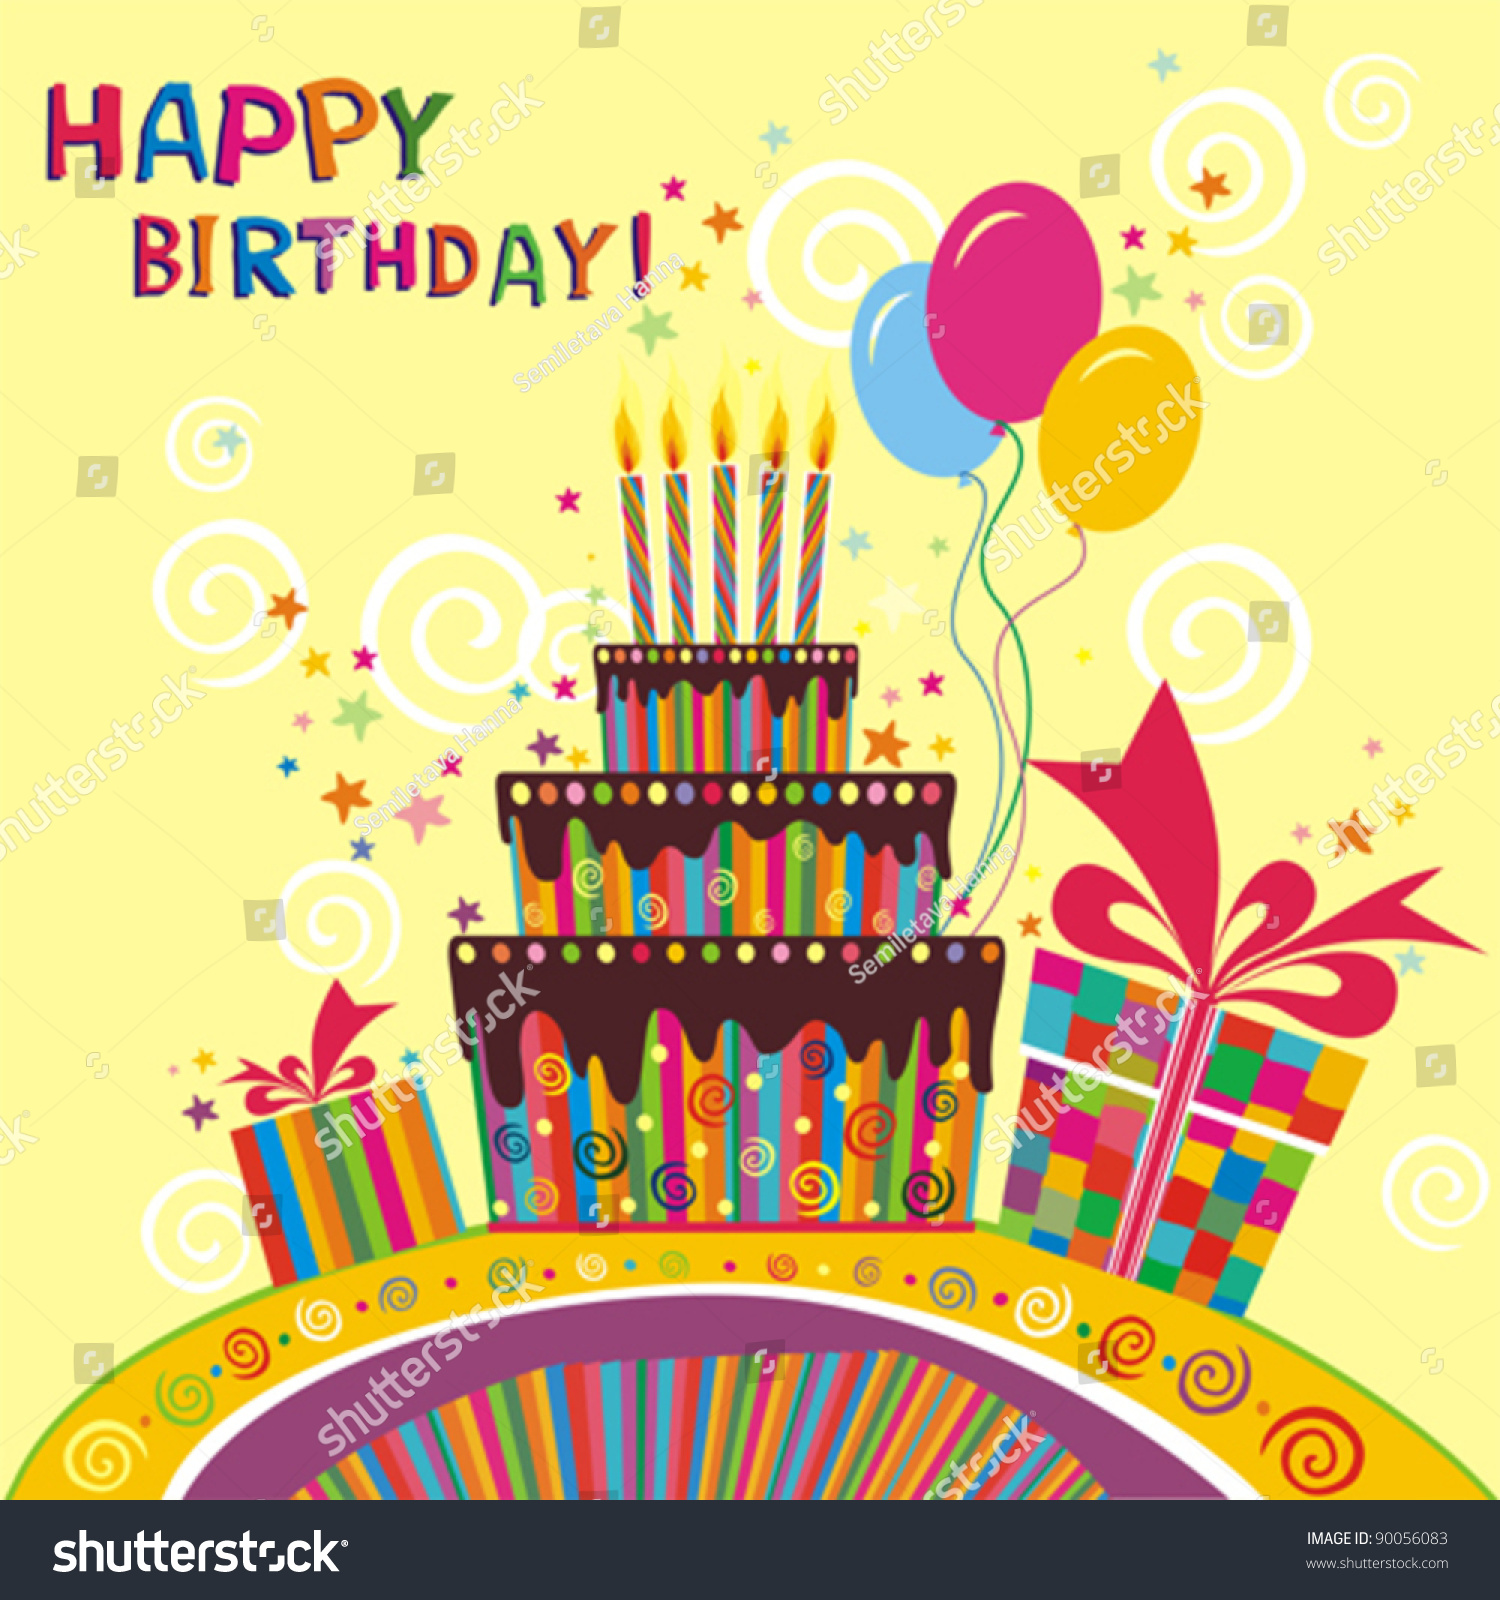 Happy Birthday Card. Vector Illustration - 90056083 : Shutterstock